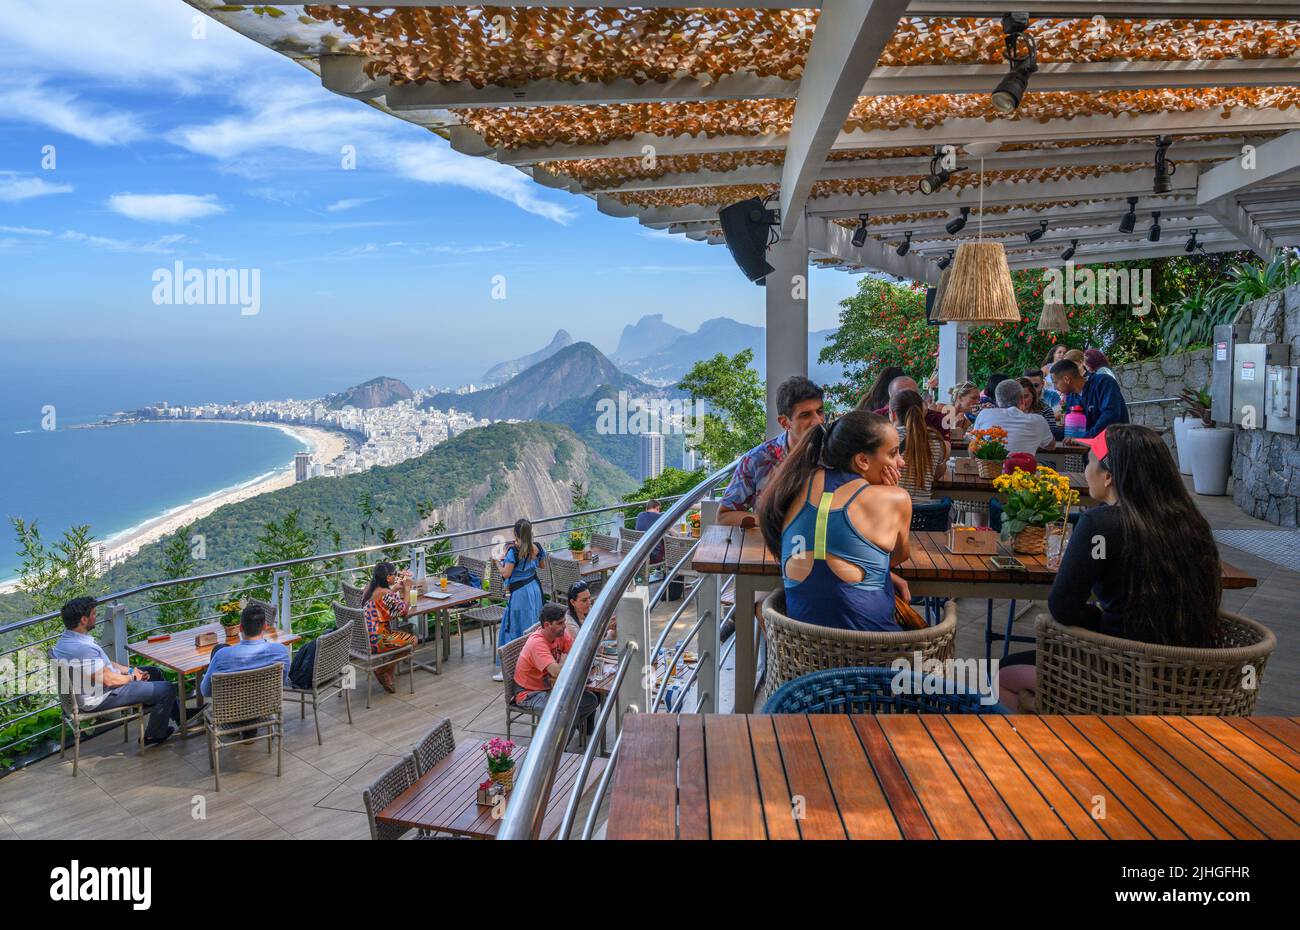 Vue depuis un restaurant situé à la gare supérieure du téléphérique de Sugarloaf, montagne de Sugarloaf, Rio de Janeiro, Brésil Banque D'Images